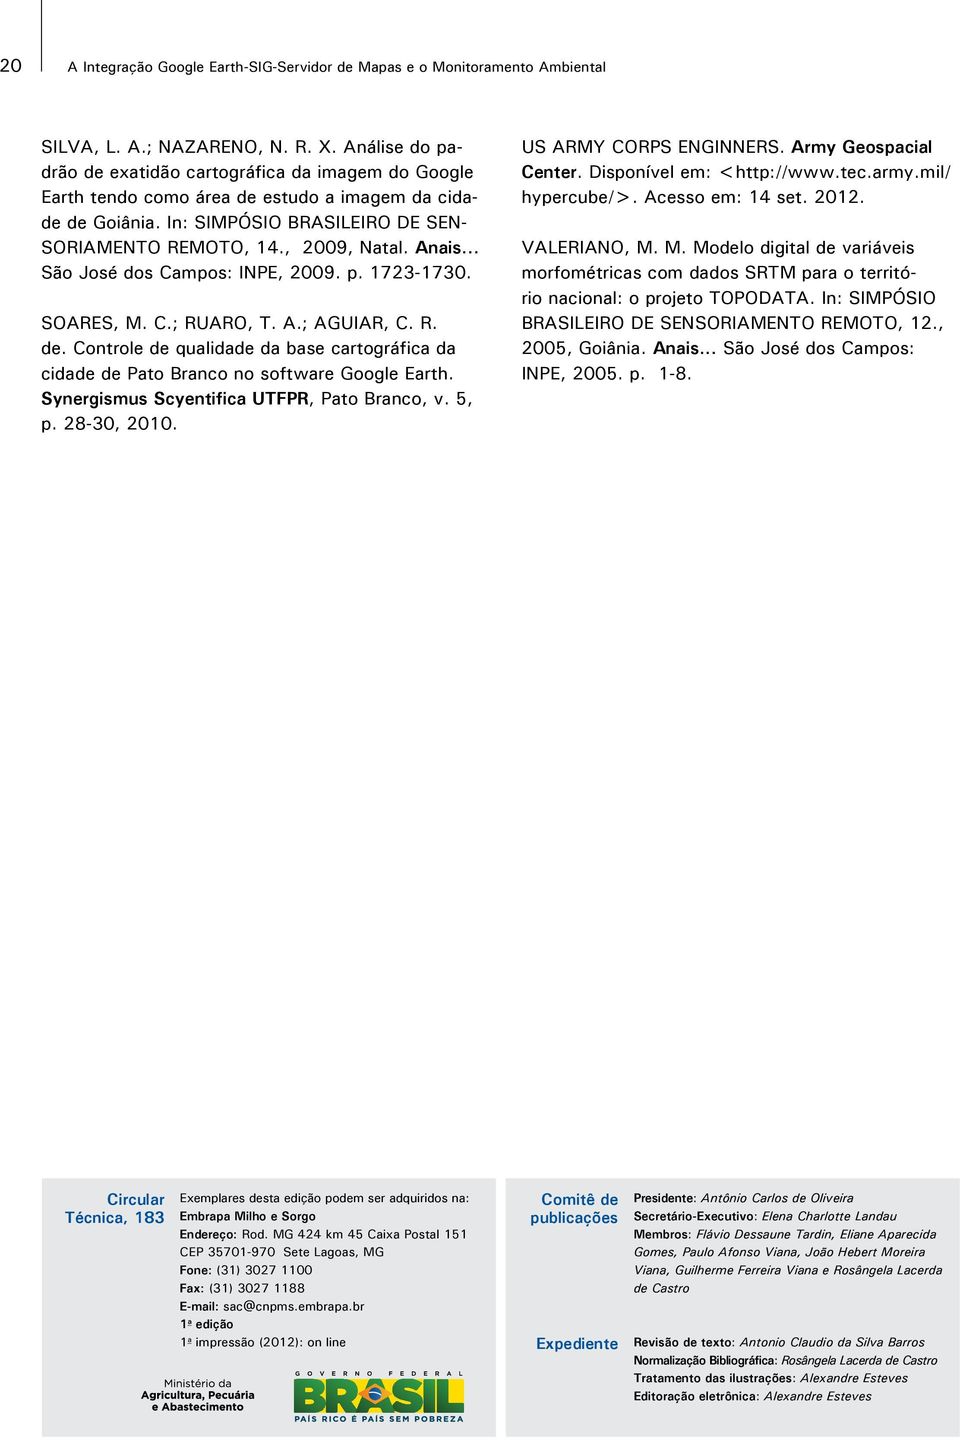 Anais... São José dos Campos: INPE, 2009. p. 1723-1730. SOARES, M. C.; RUARO, T. A.; AGUIAR, C. R. de. Controle de qualidade da base cartográfica da cidade de Pato Branco no software Google Earth.